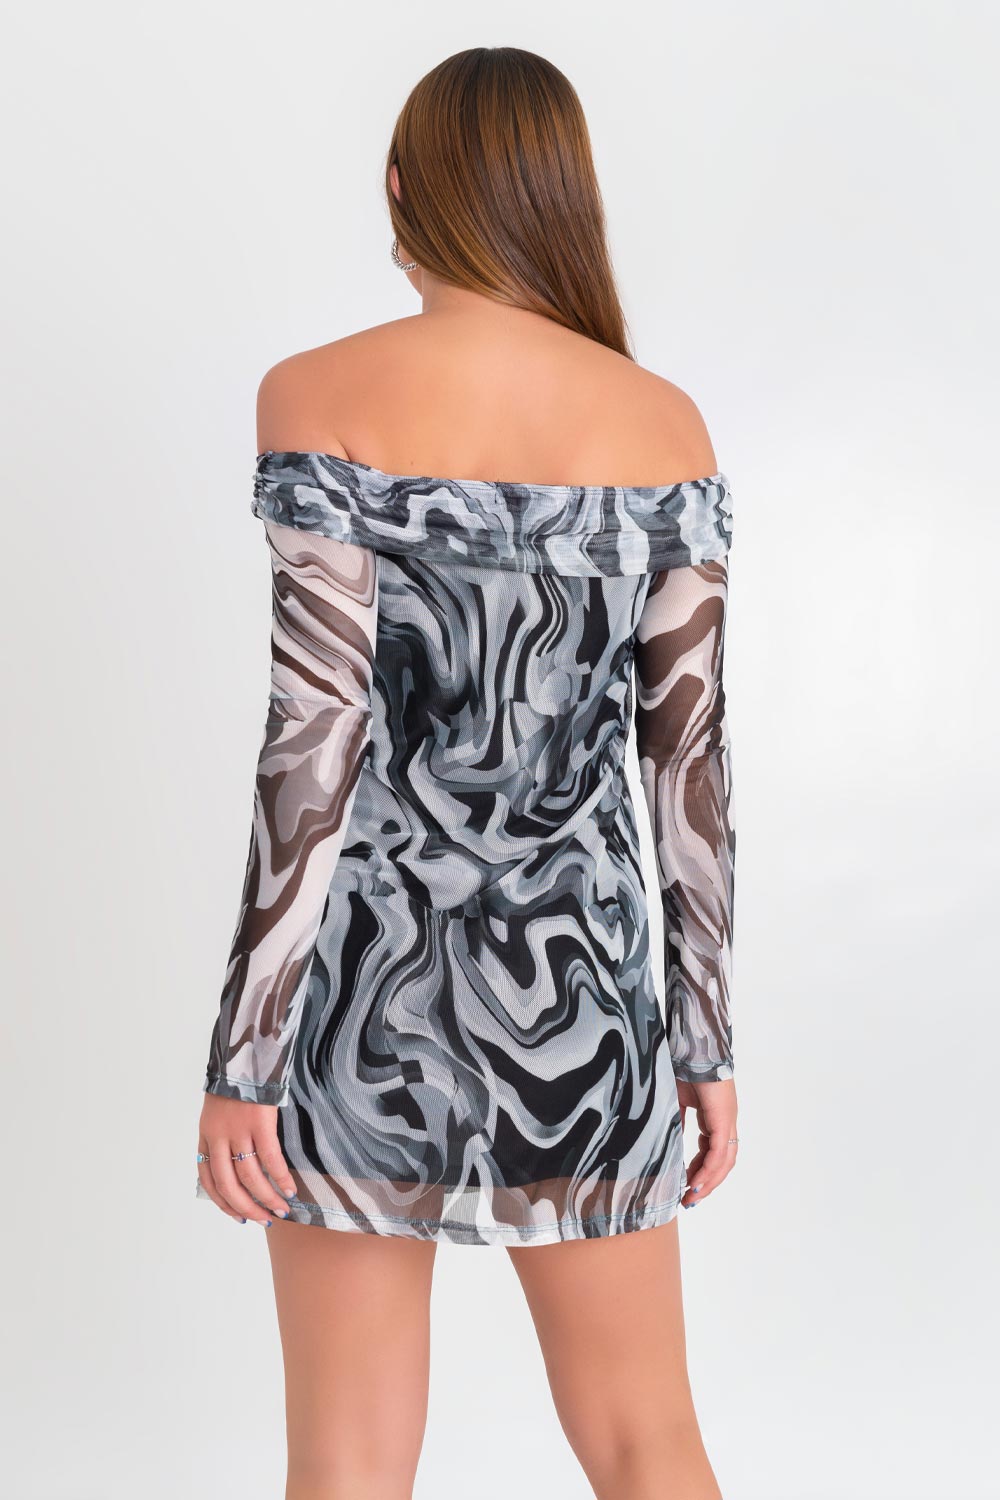 Vestido corto de mesh, estampado abstracto, de corte en a, manga larga en contraste, hombros descubiertos, escote recto con doblez y plisados en borde.